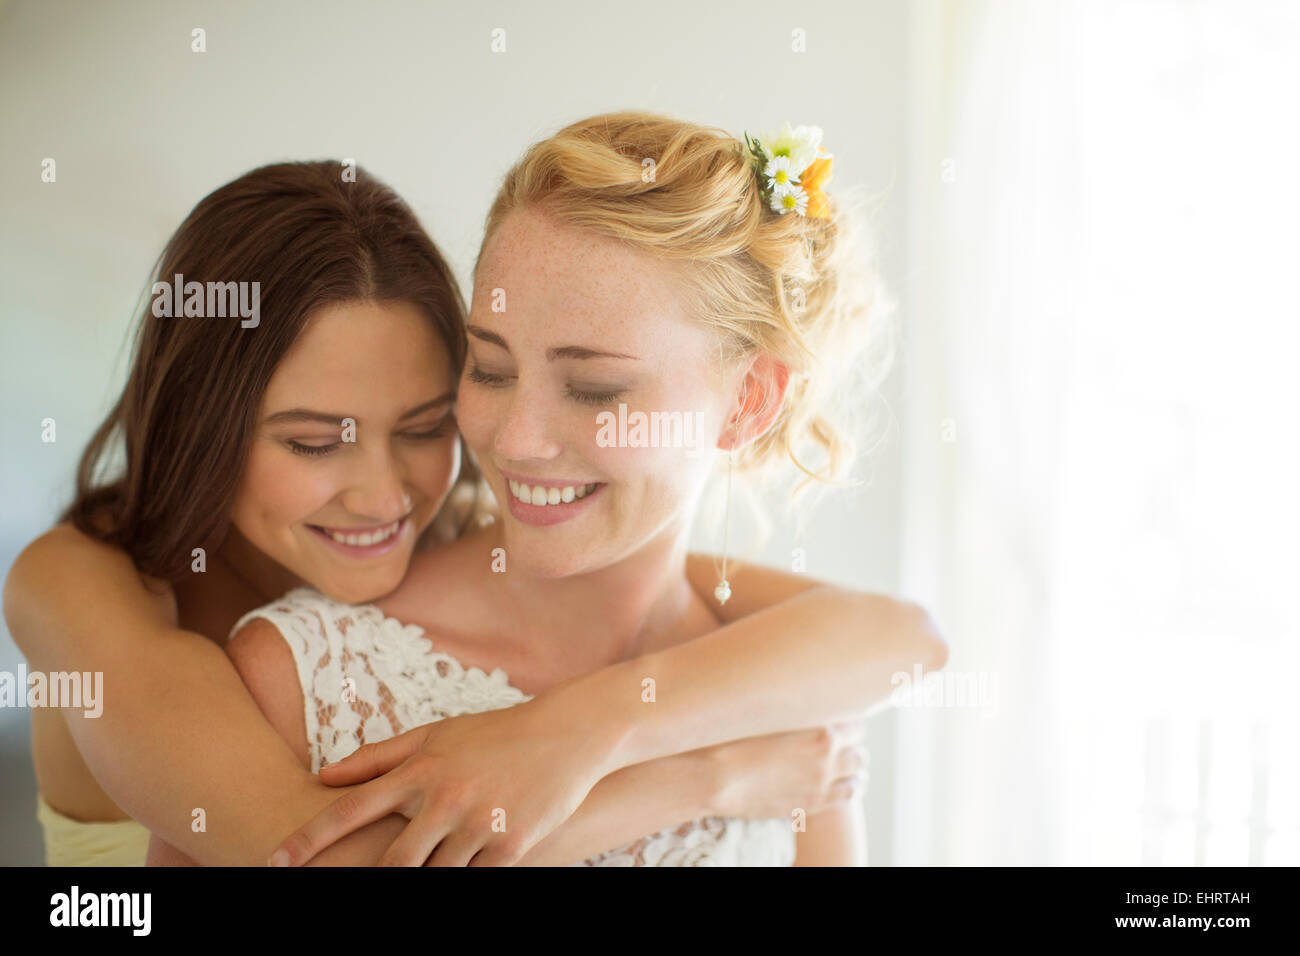 Bridesmaid embracing bride in bedroom Stock Photo